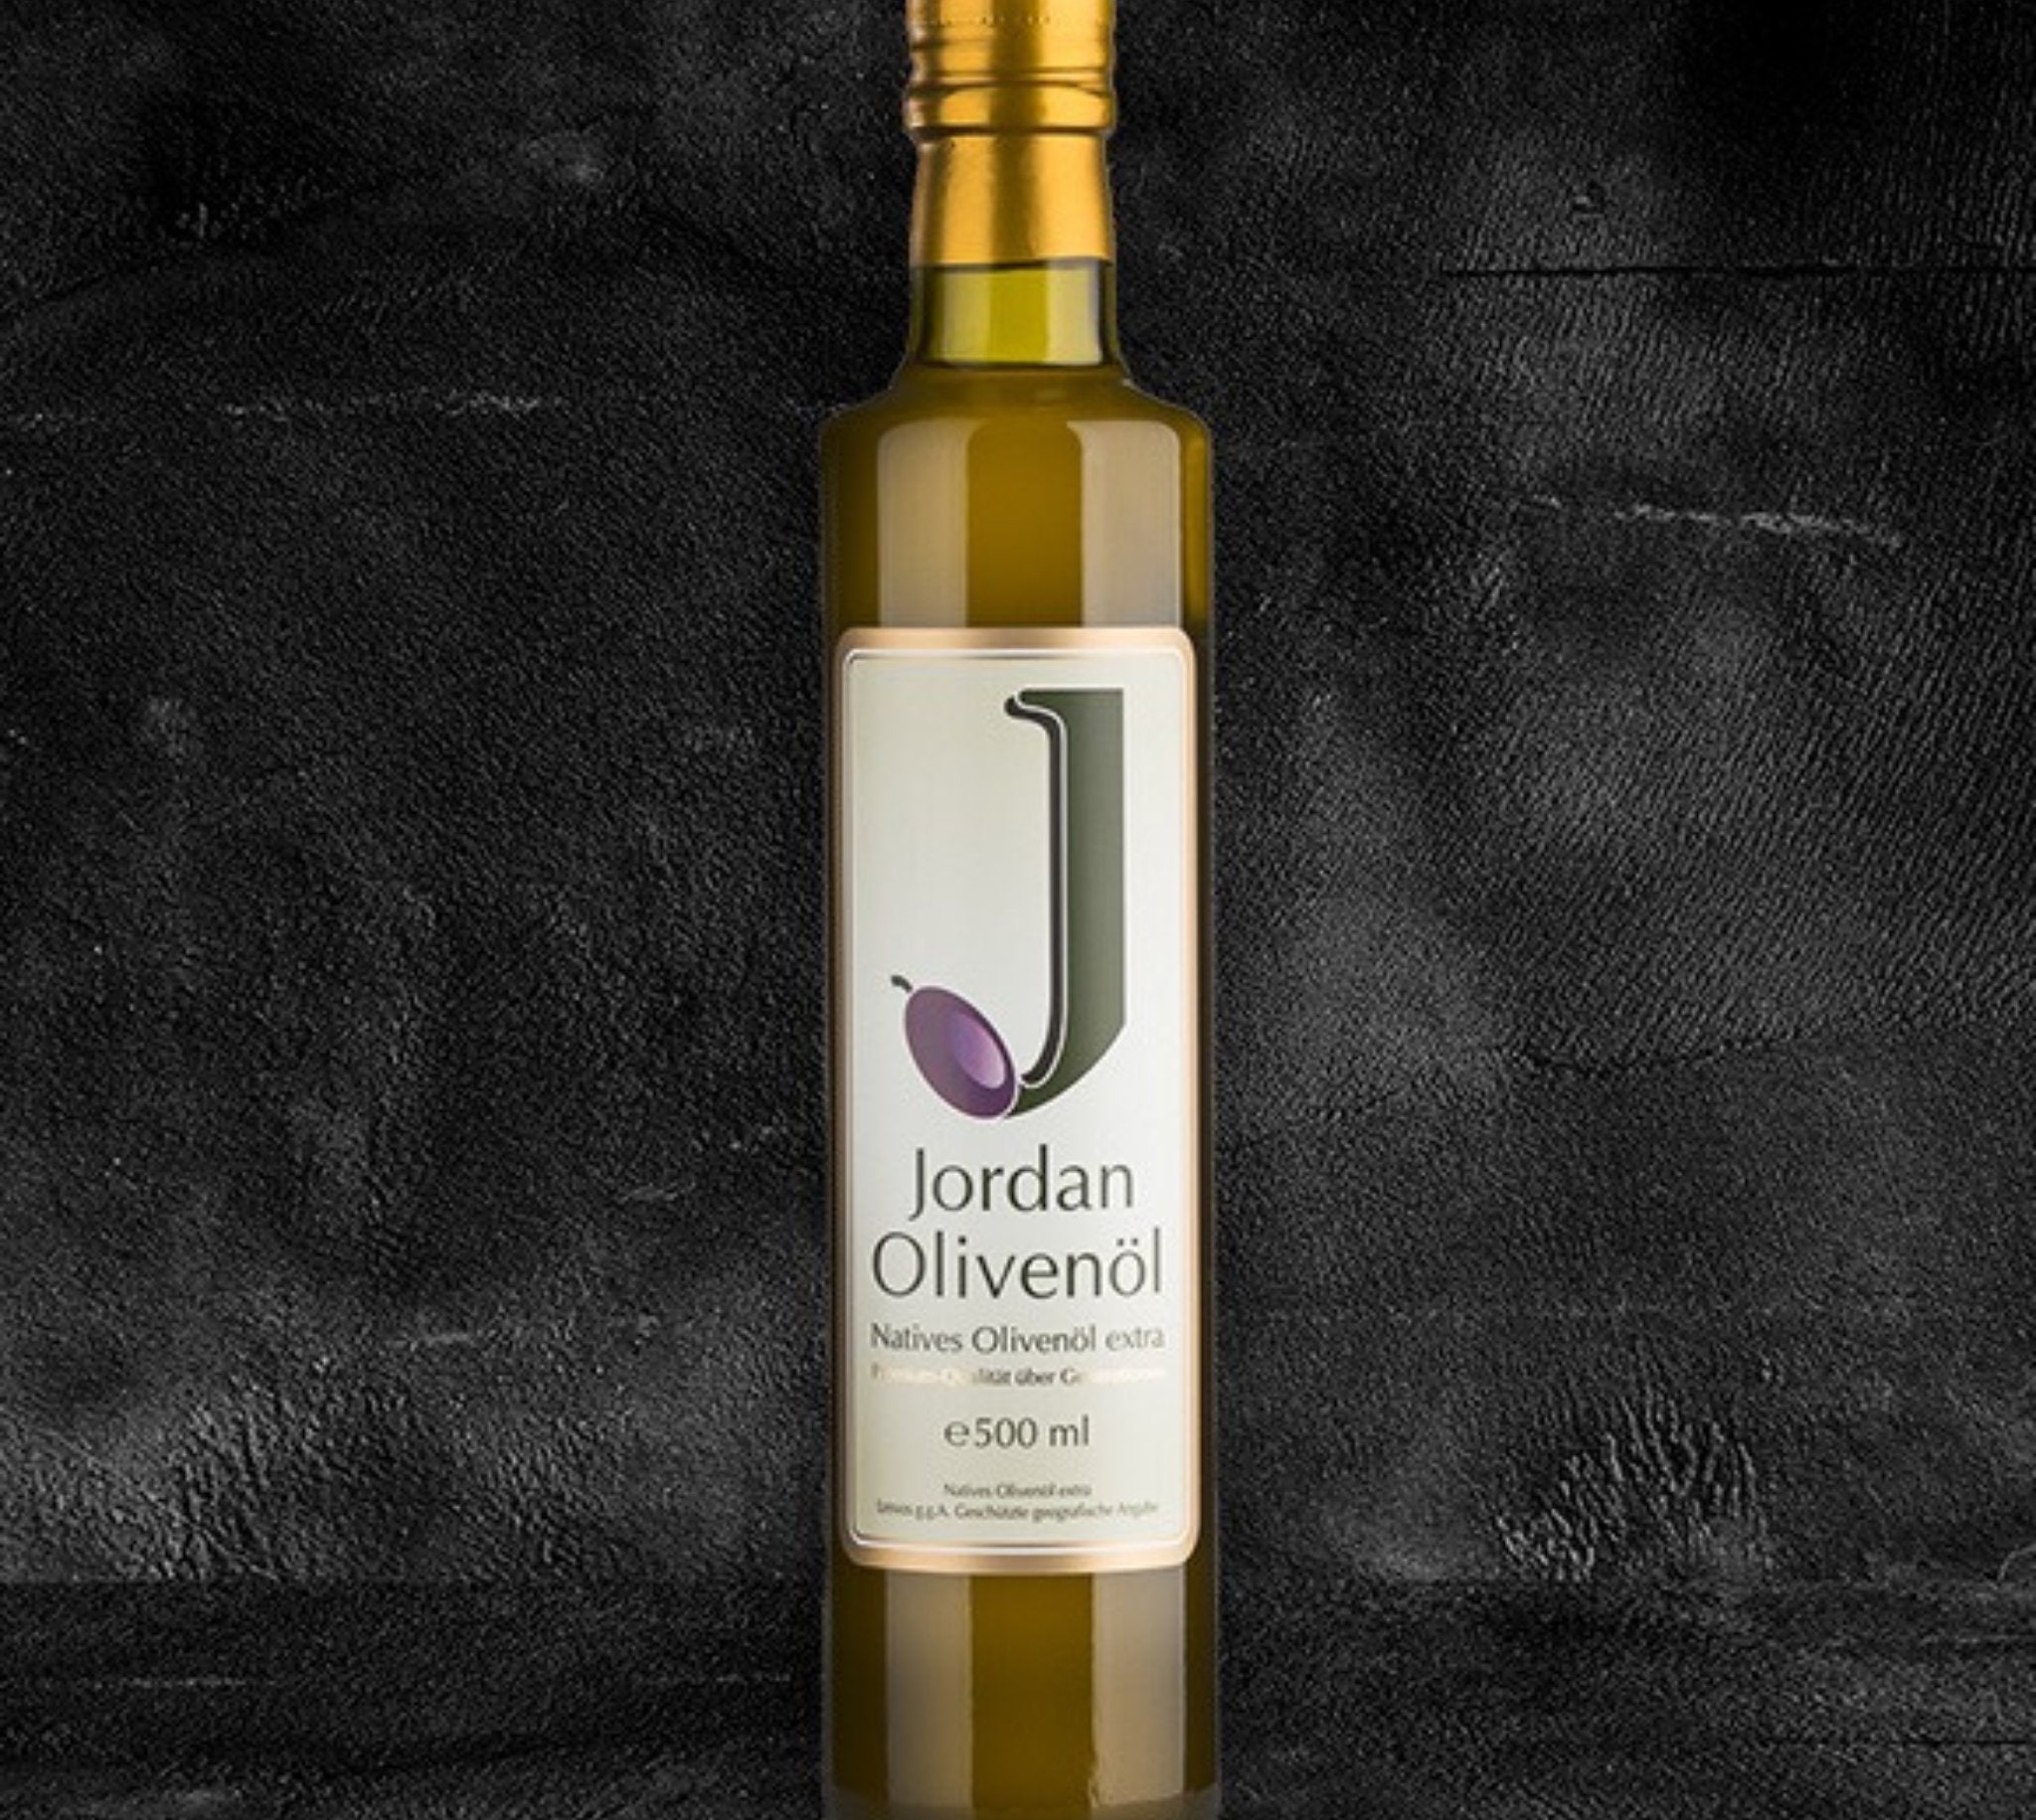 Jordan Olivenöl - Qualitätsöl aus Lesbos bei BüffelBill Entdecken Sie das Jordan Olivenöl bei BüffelBill. Ein Produkt aus Familienbetrieb im Olivenhain der griechischen Insel Lesbos. Verleiht Büffel Delikatessen besondere Geschmacksakzente.